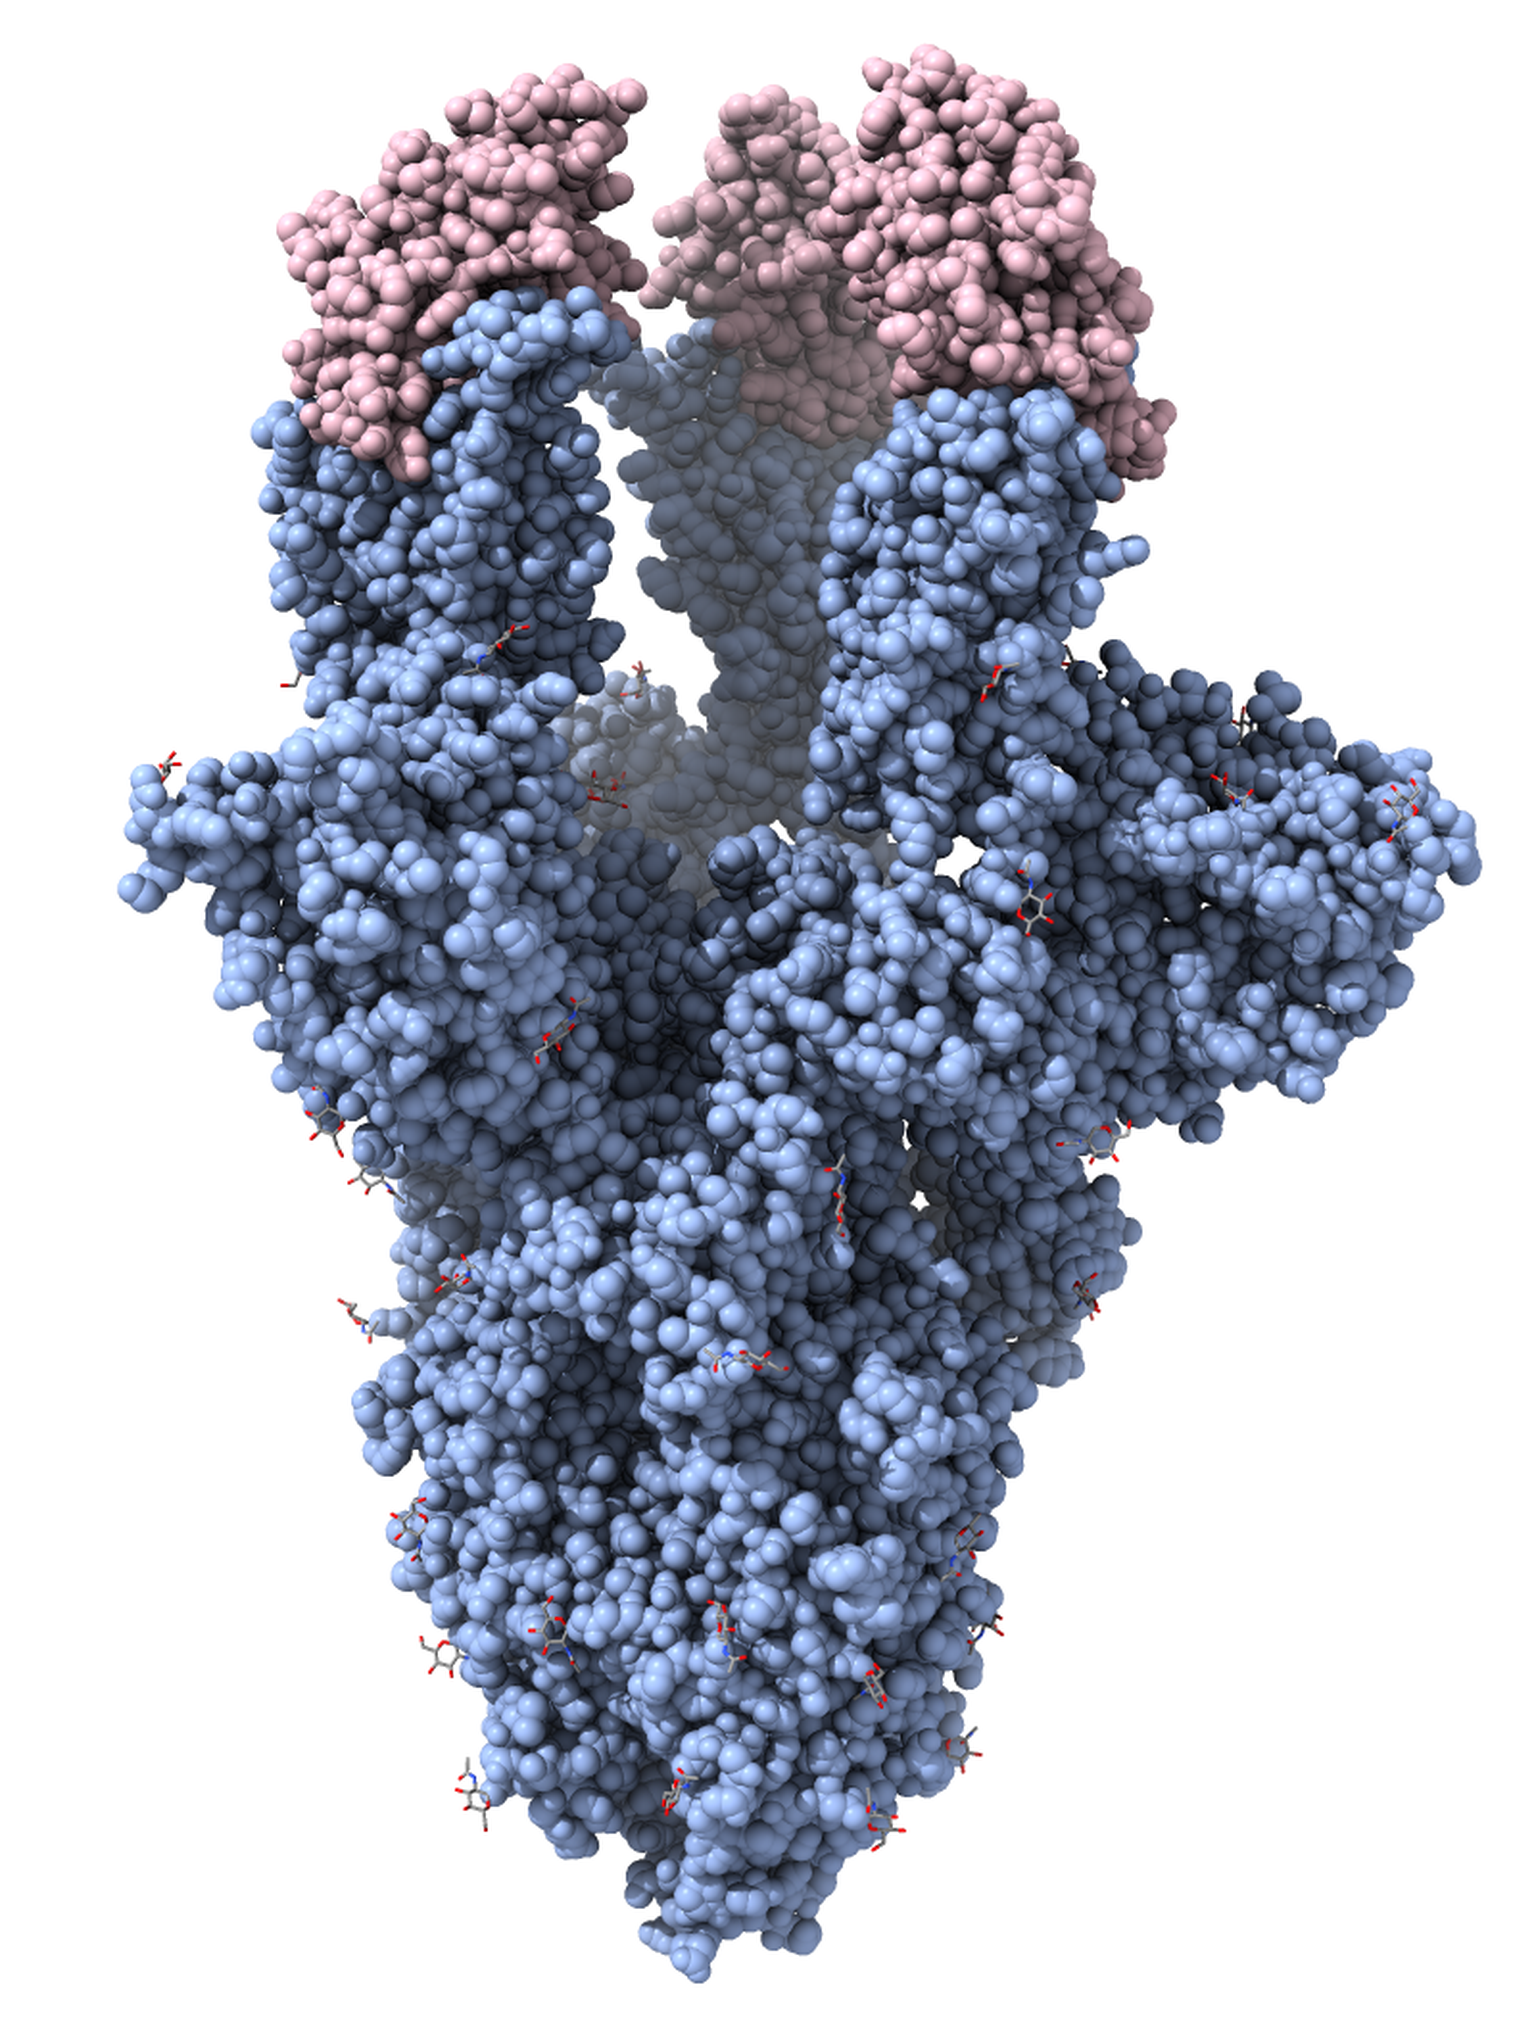 Krüo-elektronmikroskoopia teel saadud ruumiline kujutis koroonaviiruse ogavalgust (sinine) koos sellega seostunud nanokehadega (roosa). Nanokehad blokeerivad ogavalgul inimese rakkudega seostumiseks olulise piirkonna ja neutraliseerivad seega viirusosakese